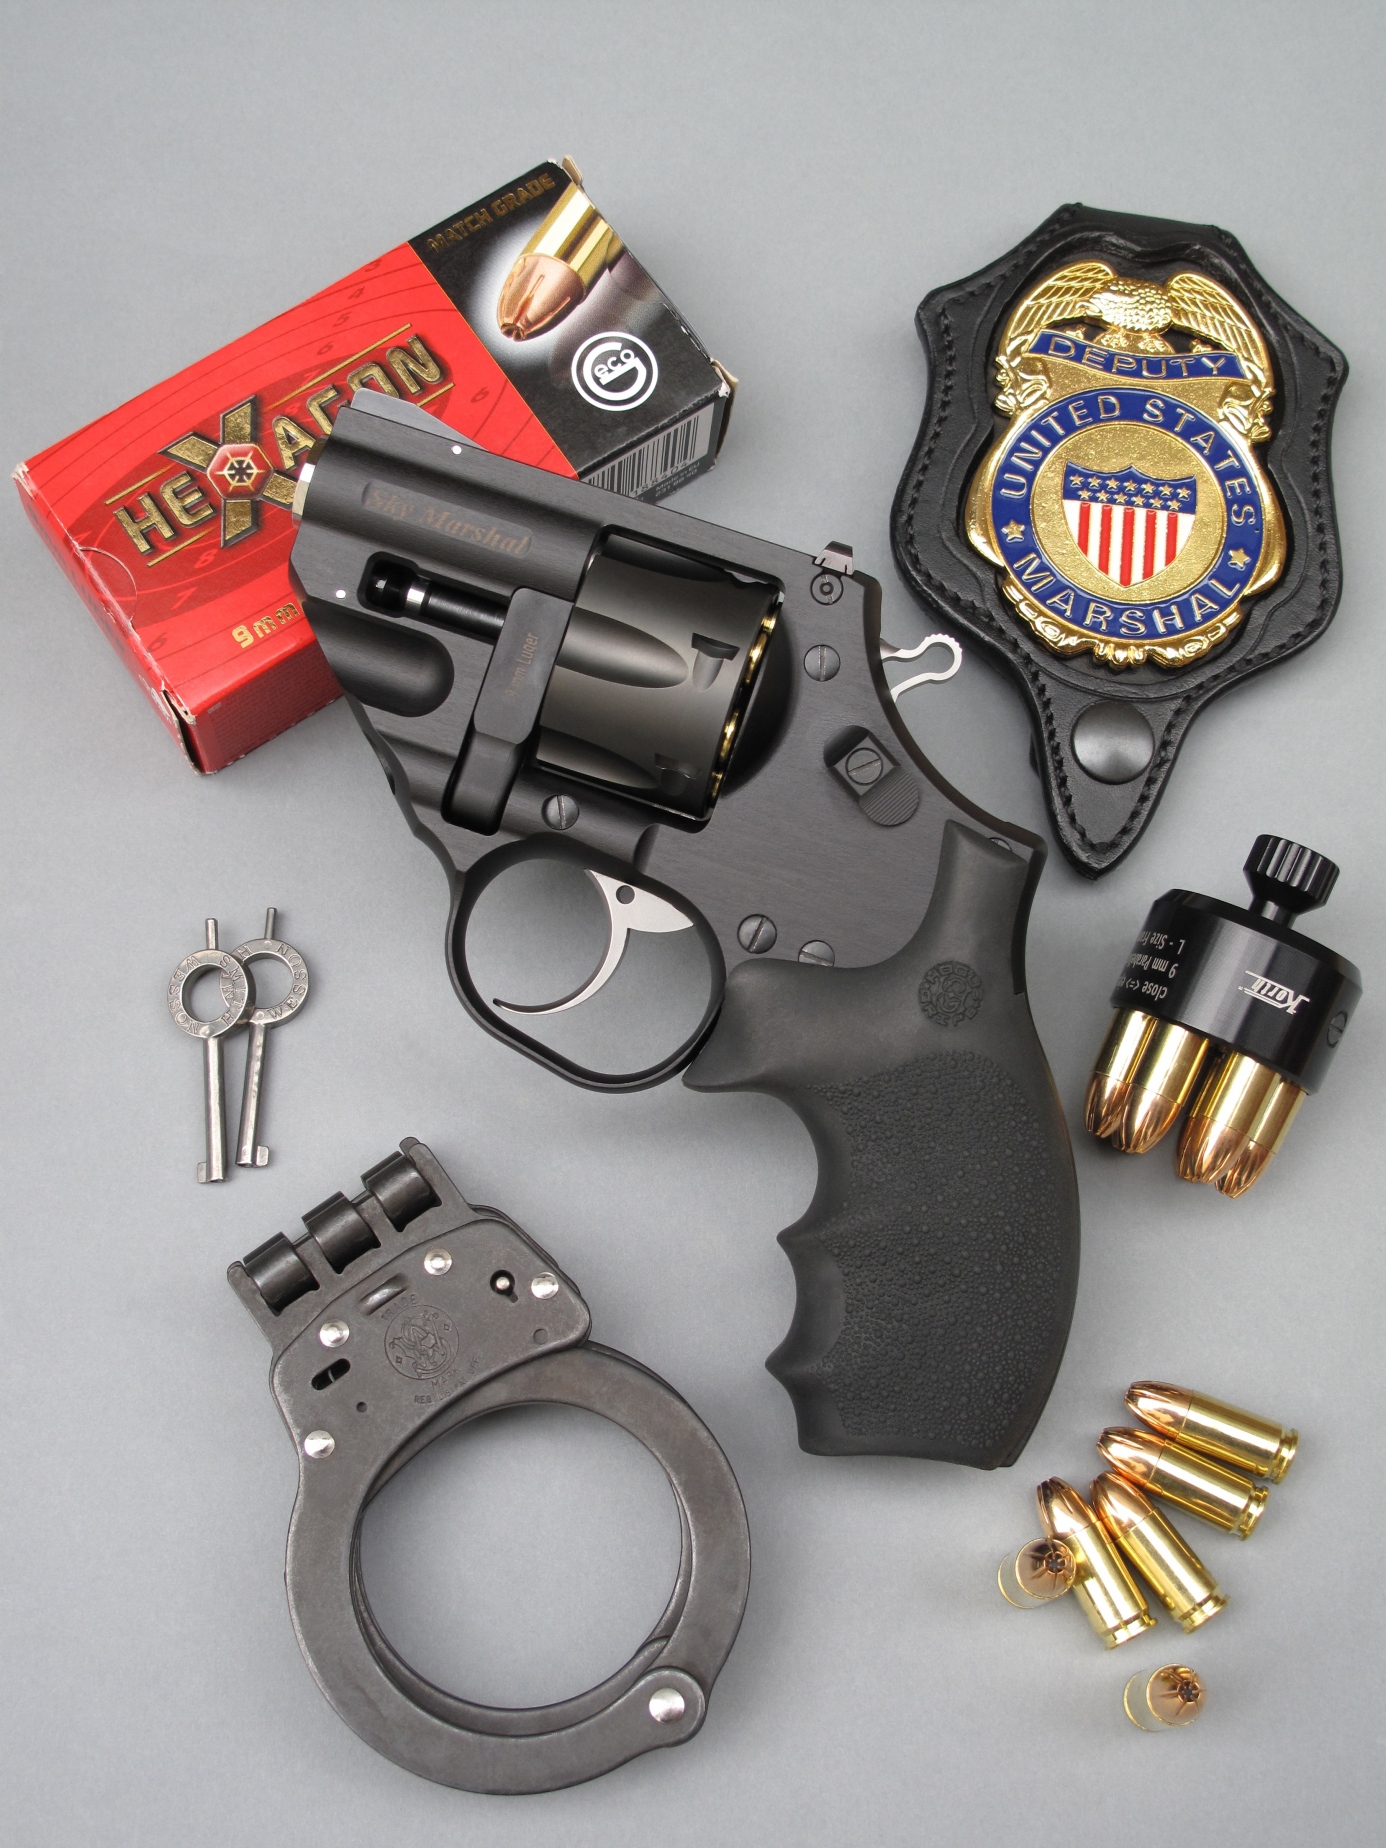 Le revolver Korth Sky Marshal est accompagné ici par son speed-loader, une boîte de cartouches Geco Hexagon de calibre 9 mm Parabellum, une plaque de Deputy U.S. Marchal (police fédérale) et une paire de menottes Smith & Wesson model 300.